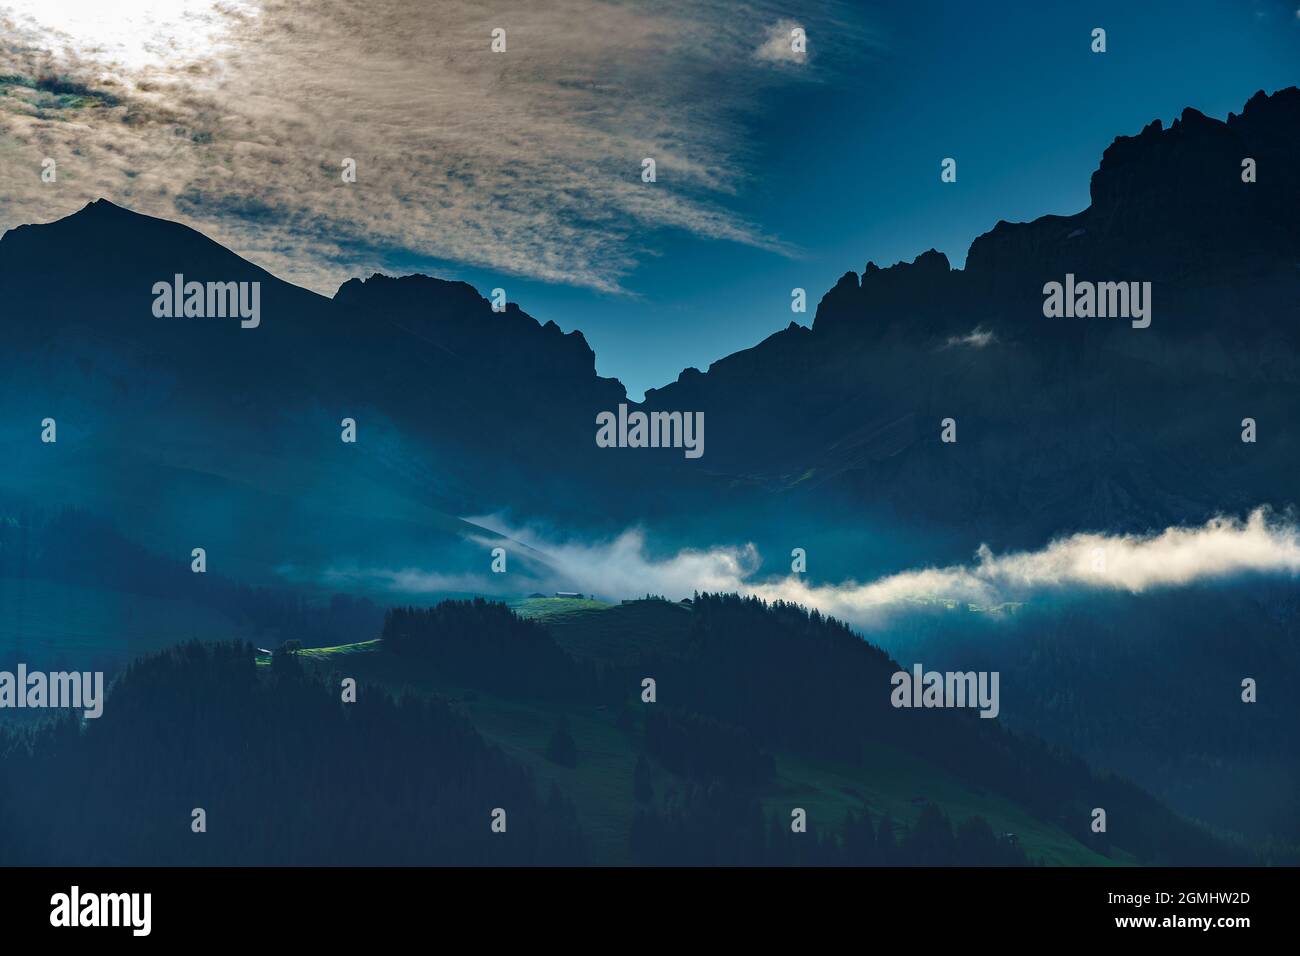 Beim Sonnenaufgang beleuchtete Alp mit einer Nebelbank in Adelboden, im hintergrund Bonderspitze und Grosser Lohner, Berner Oberland, Schweiz Banque D'Images